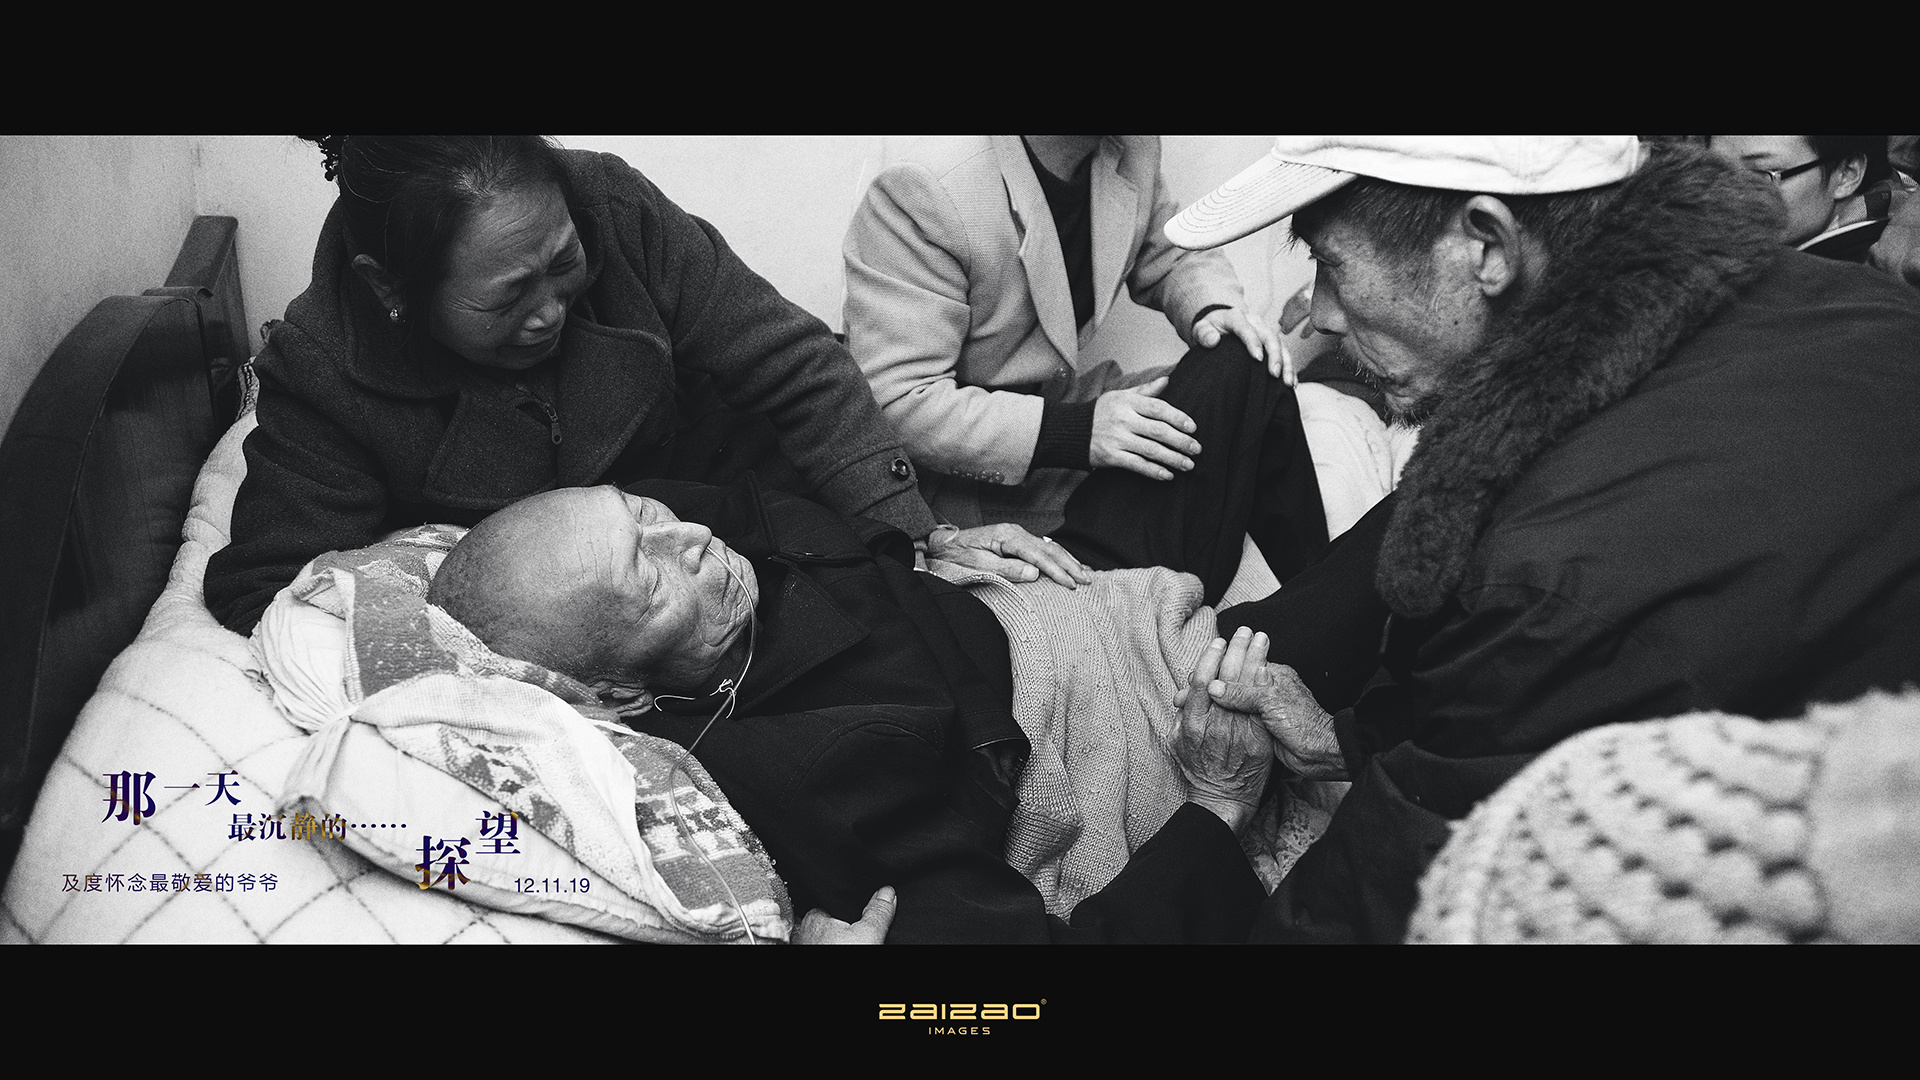 老人頭痛表情痛苦圖片素材-JPG圖片尺寸6720 × 4480px-高清圖案501701416-zh.lovepik.com